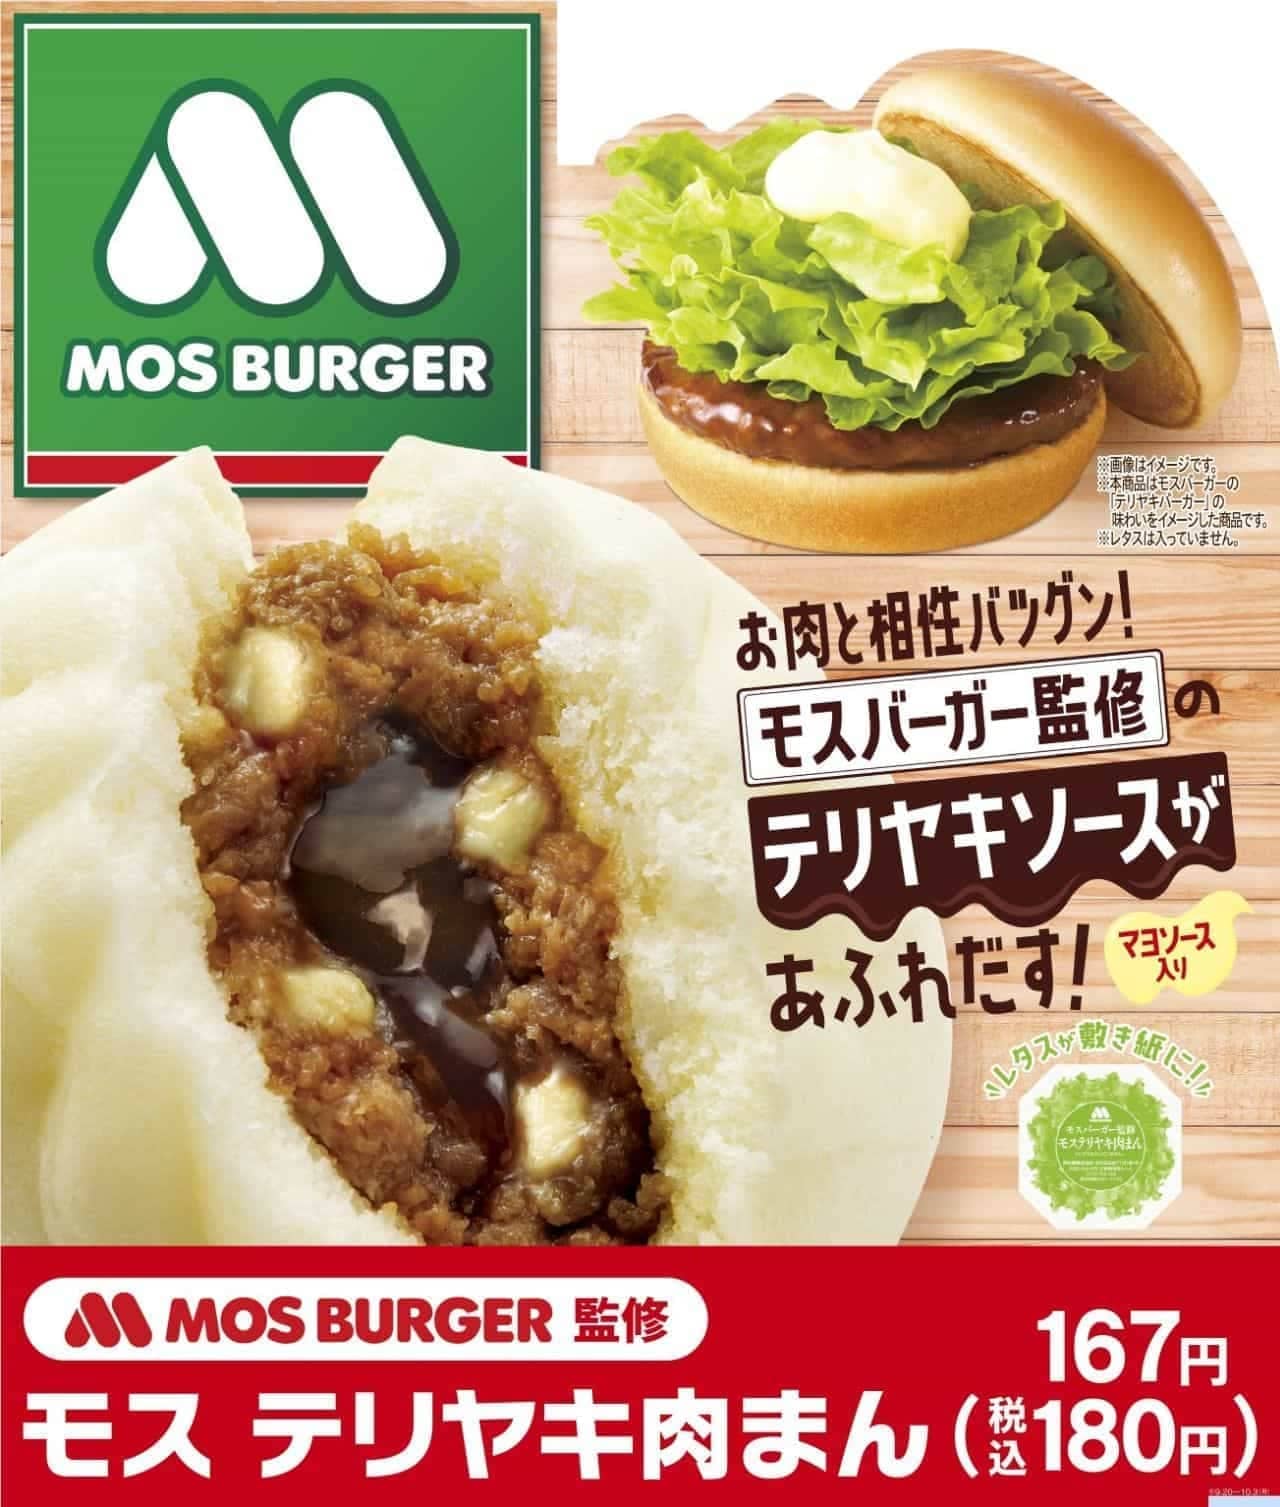 FamilyMart "Mos teriyaki steamed meat buns